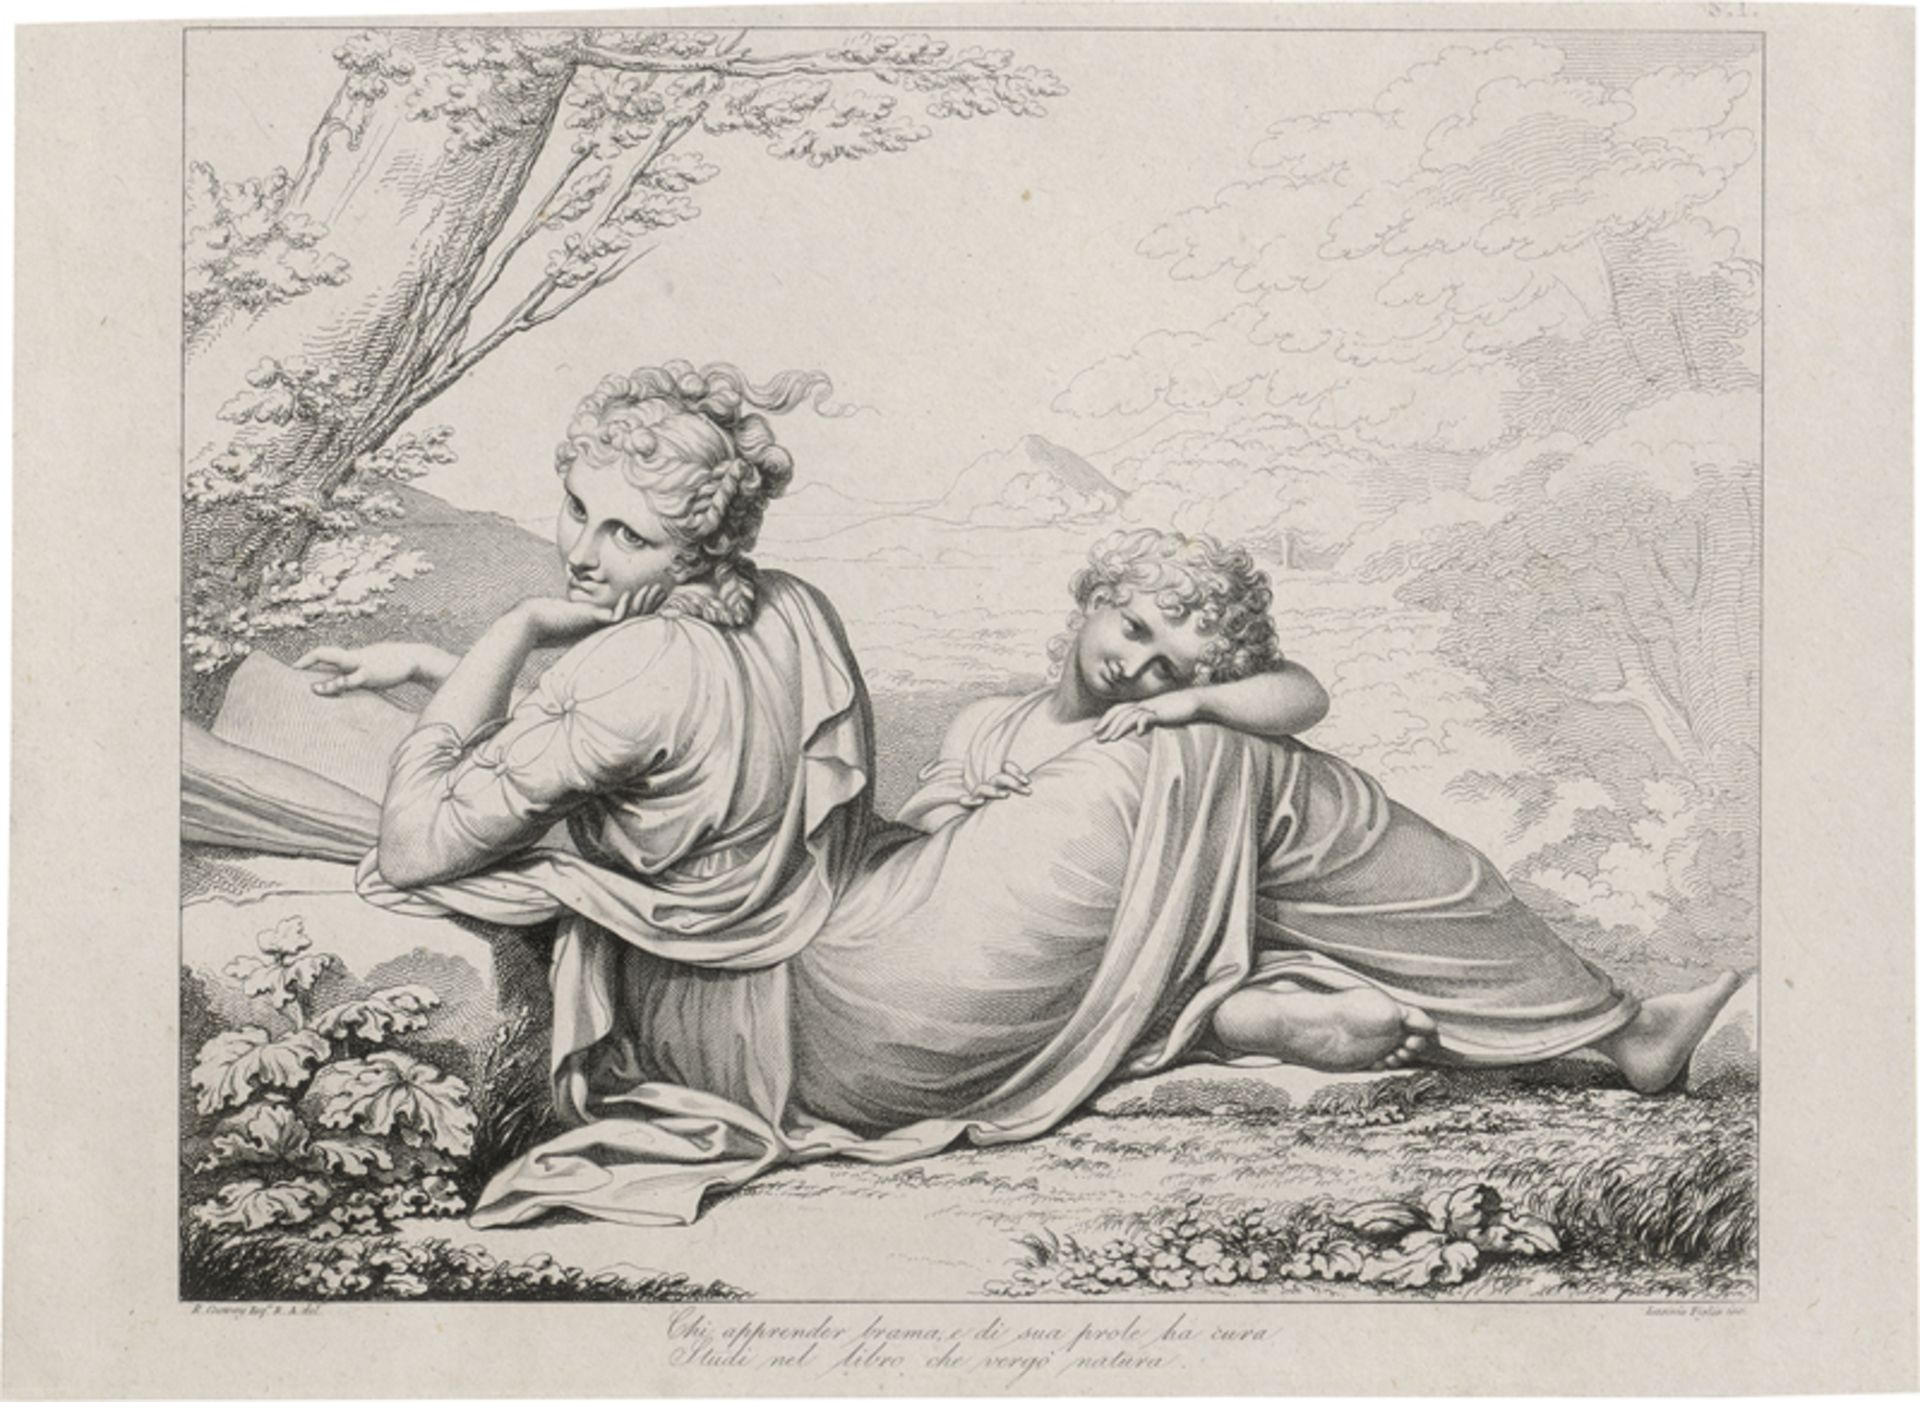 Lasinio, Giovanni Paolo: Liegende junge Frau mit einem Kind in einer Ladschaft